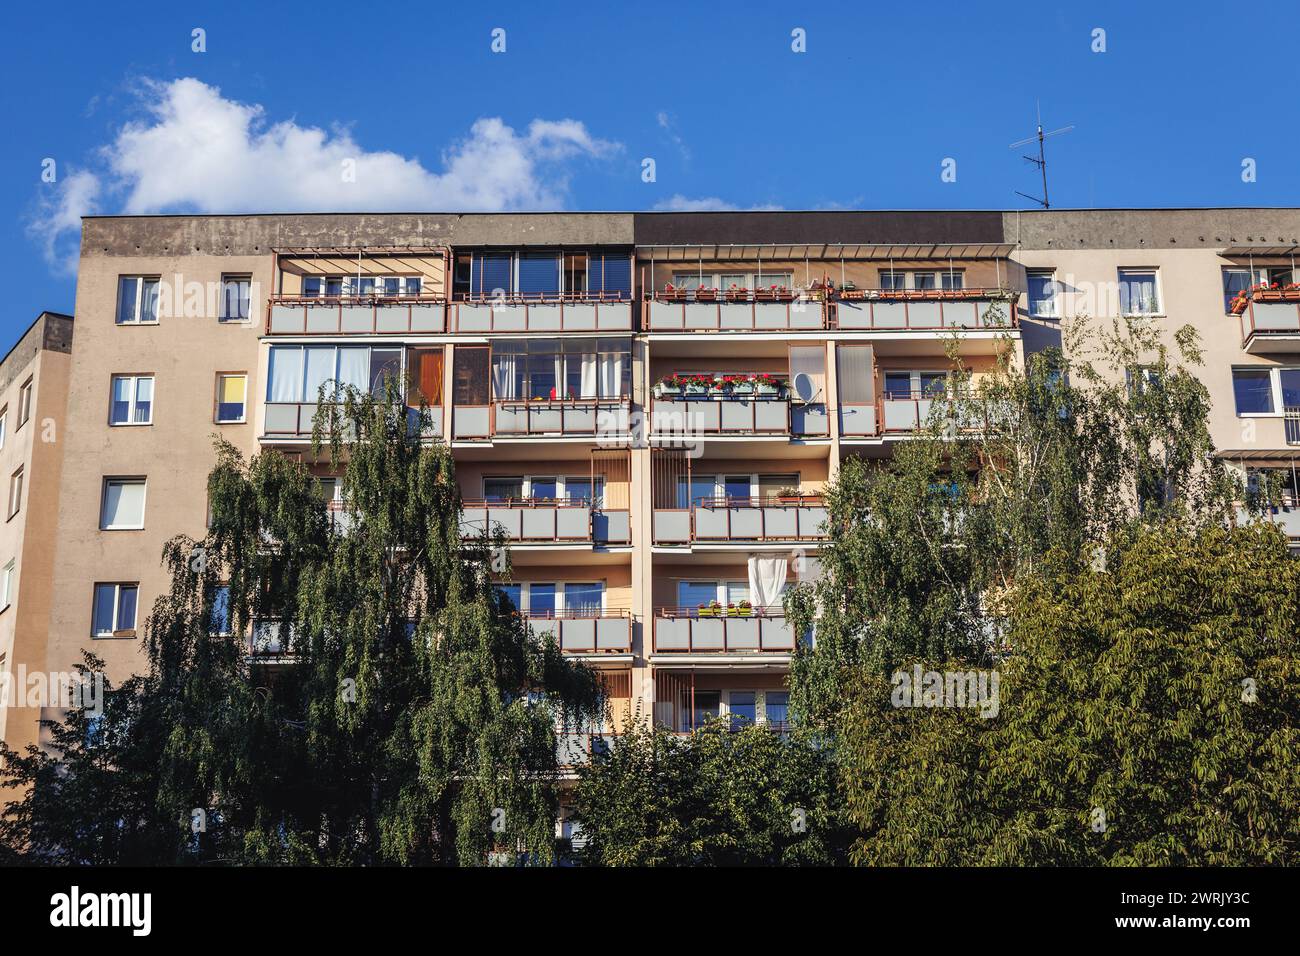 Blocco di appartamenti chiamato Wielka Plyta - panelak nell'area di Goclaw, sottodistretto di Praga-Poludnie, città di Varsavia, Polonia Foto Stock